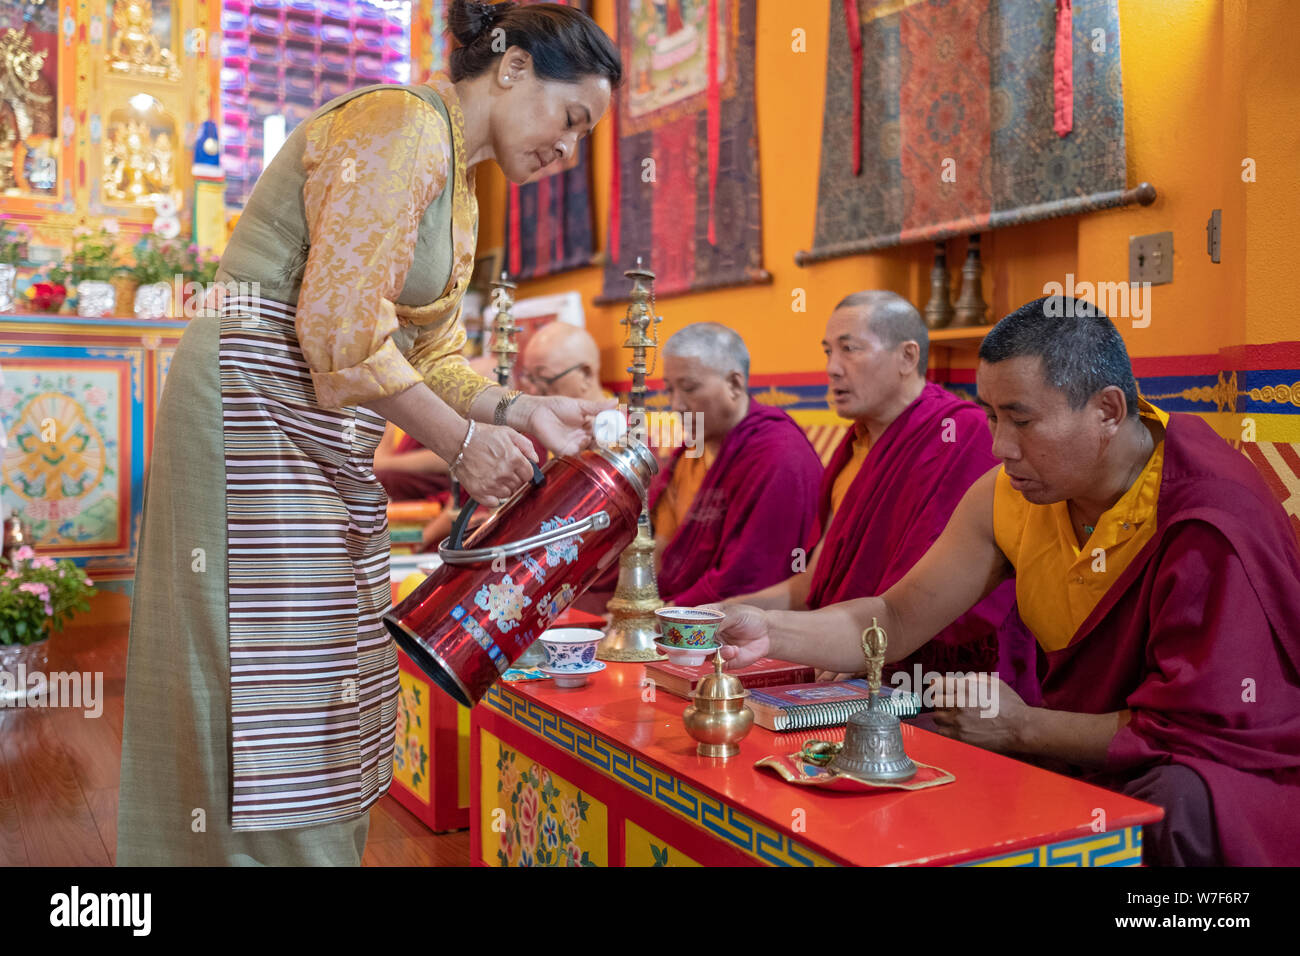 Eine attraktive Nepalesische Frau giesst Kaffee für die Mönche, die an der Sherpa Kyidug Tempel in NEW YORK führenden sind ein morgengebet Service. Stockfoto